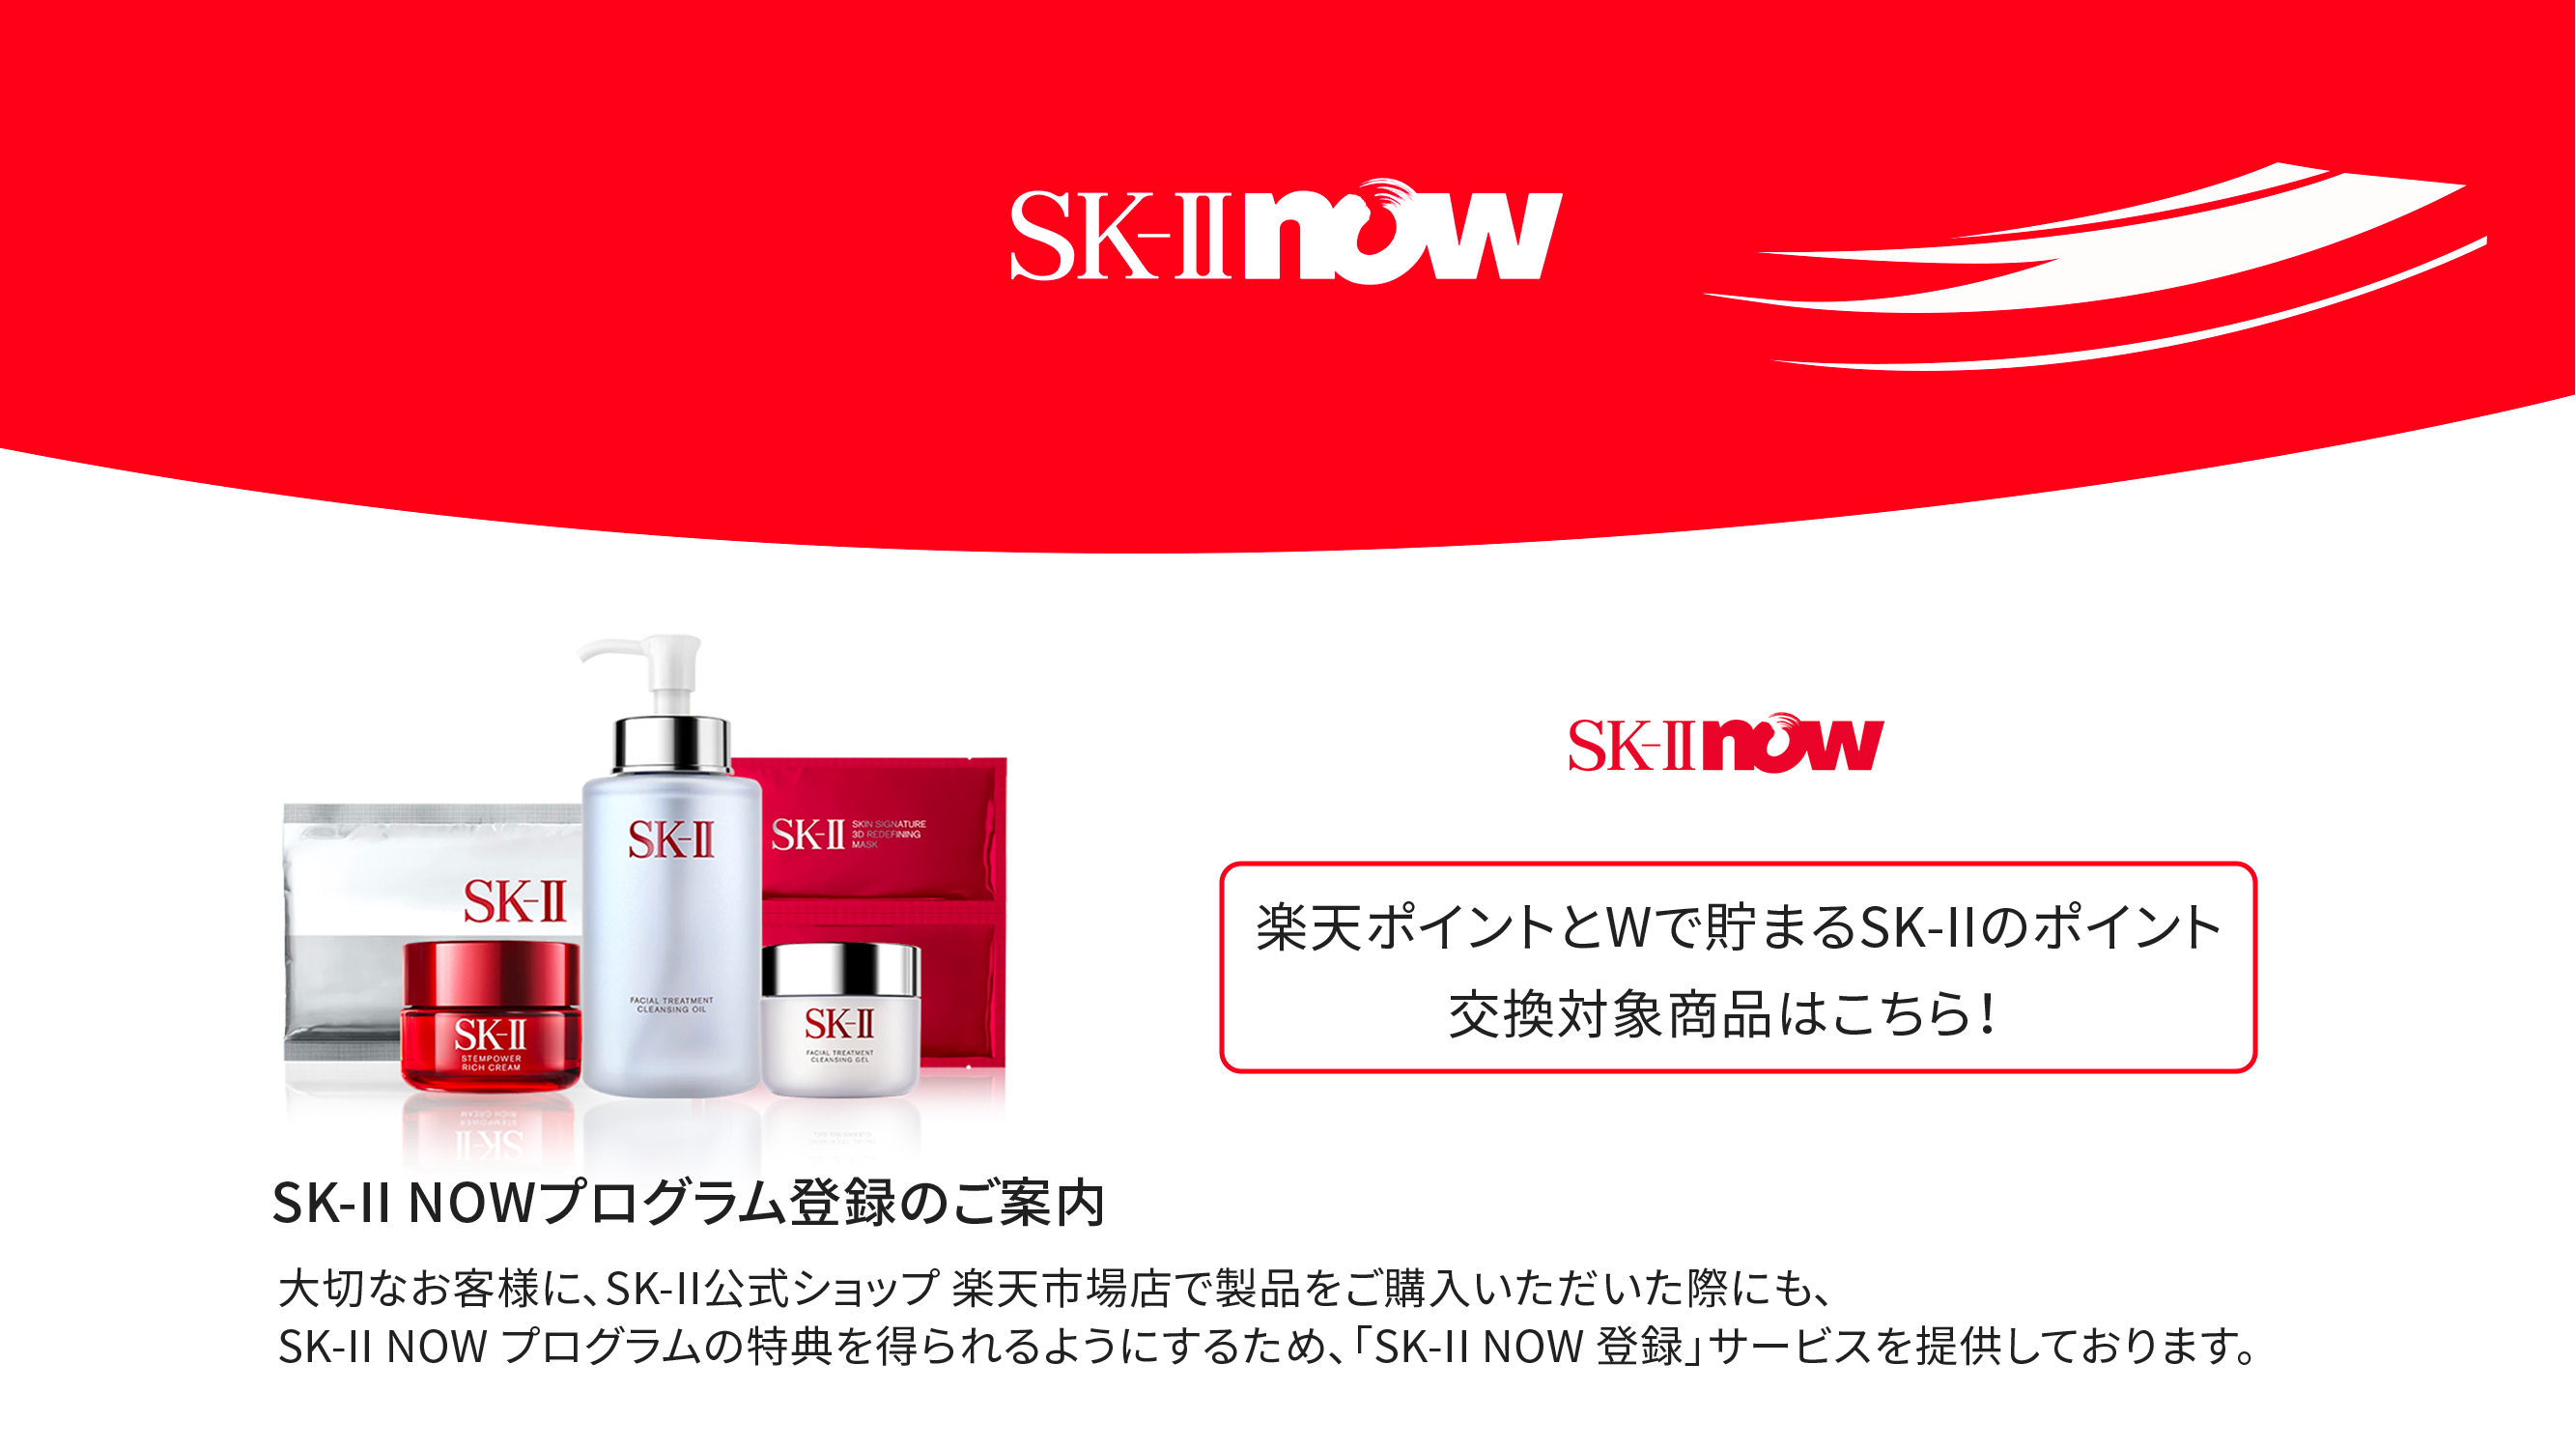 SK-II now